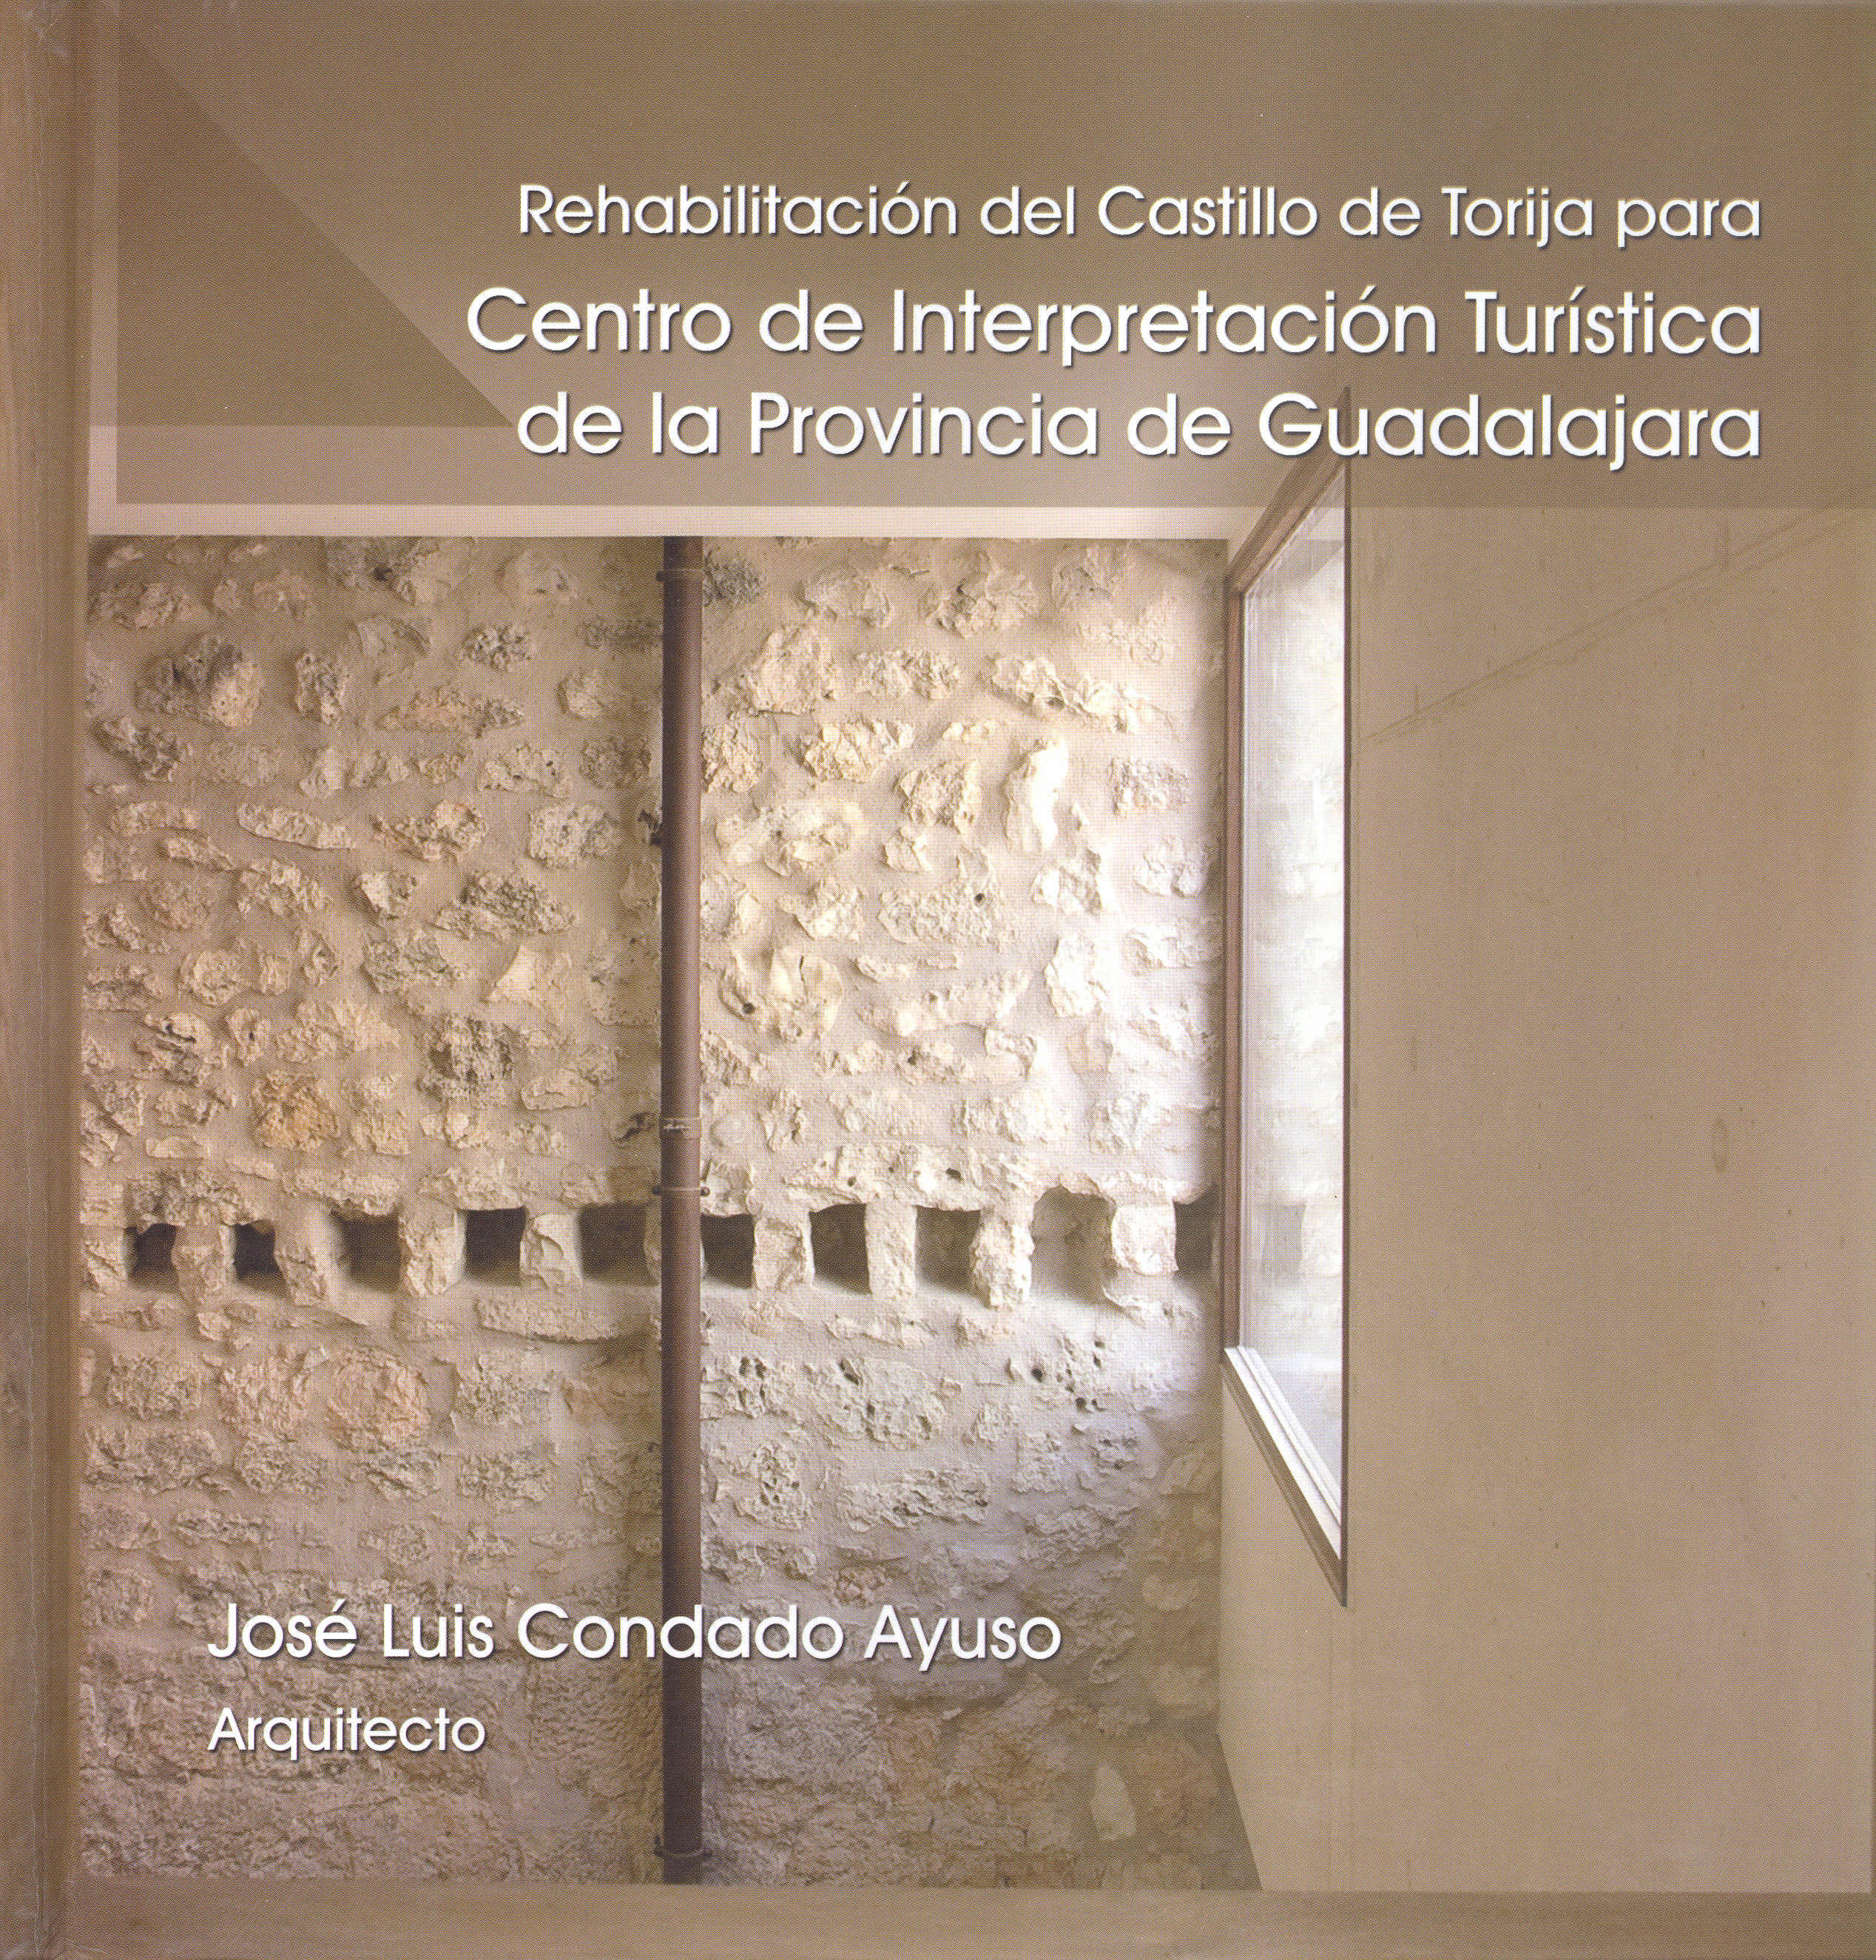 Rehabilitacion del Castillo de Torija para Centro de Interpretación turística de la provincia de Guadalajara